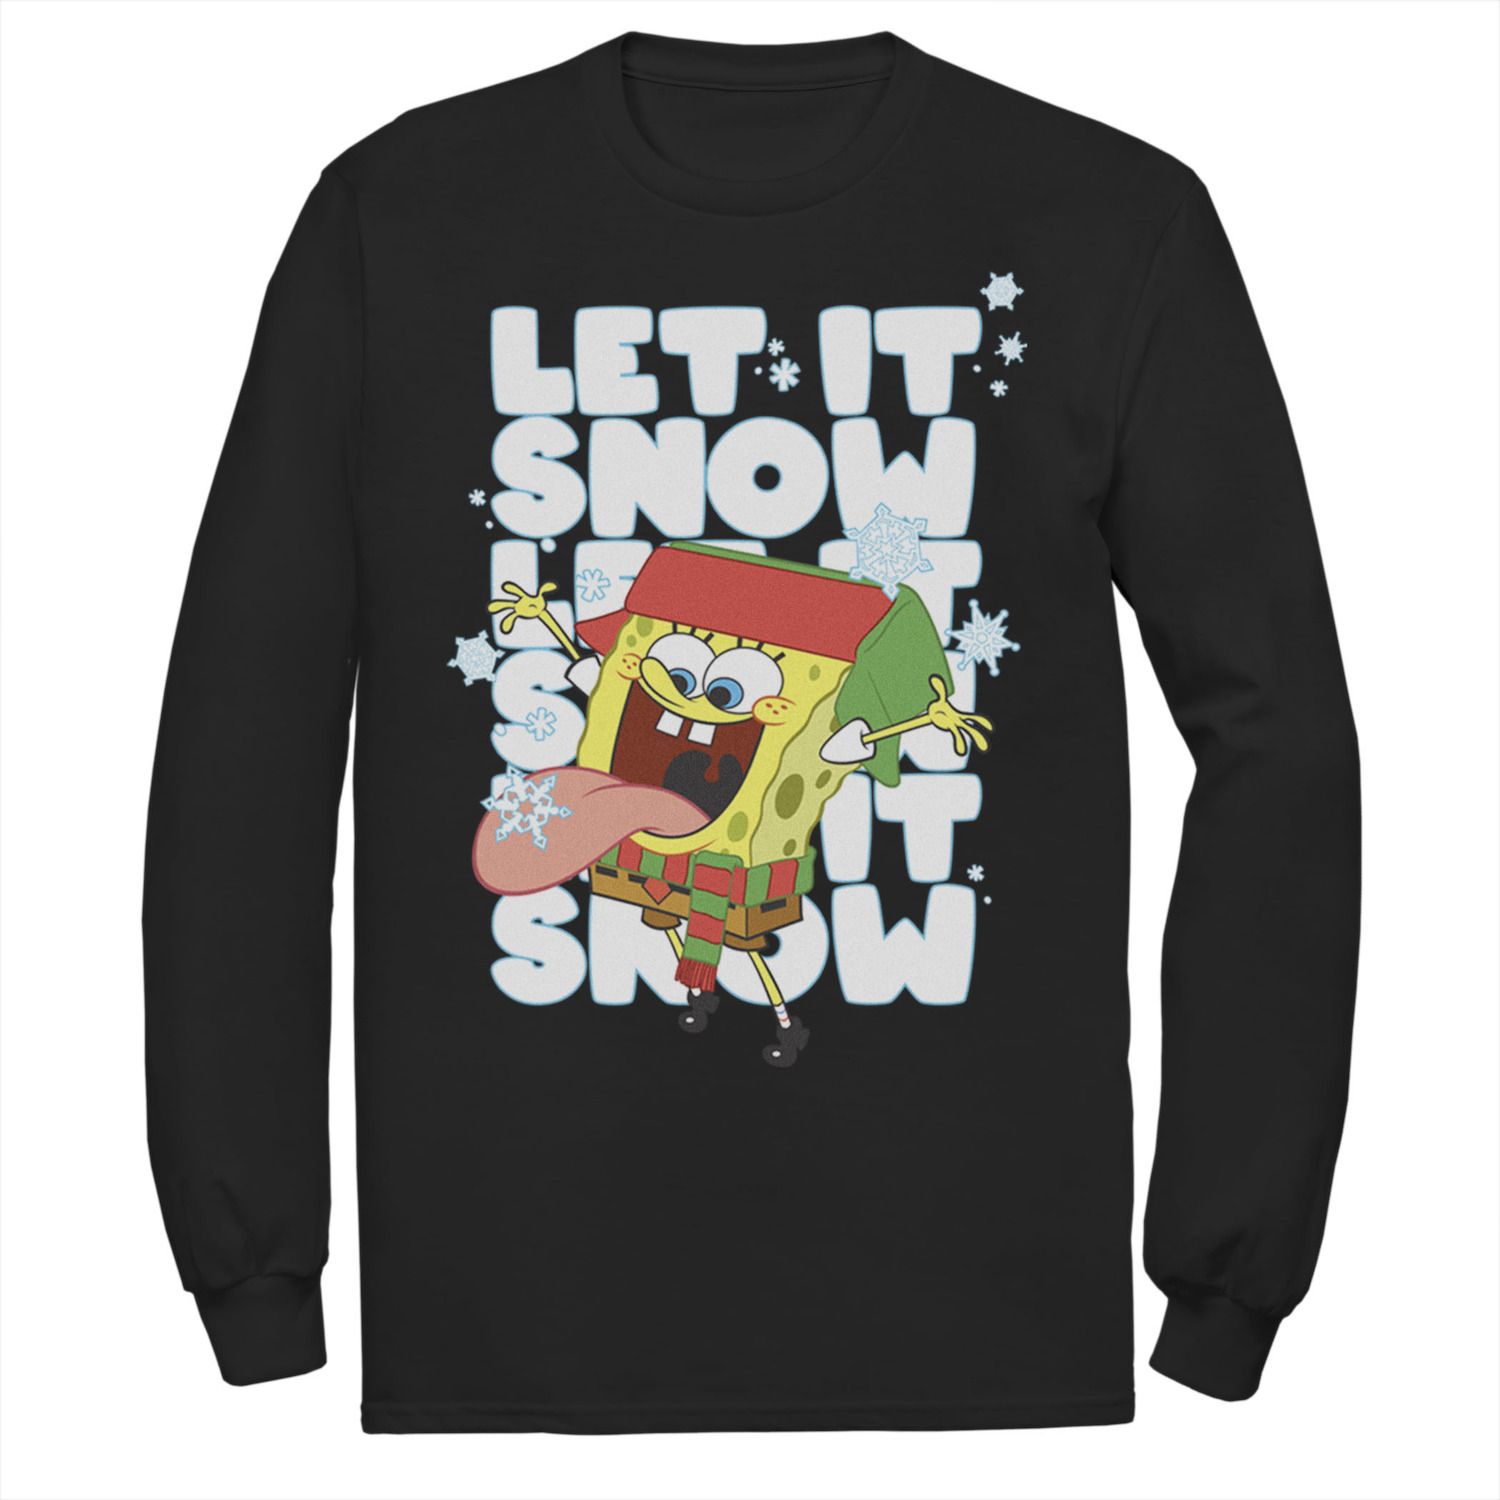 Мужская футболка SpongeBob Let It Snow Let It Snow Let It Snow с длинными рукавами и цветами Nickelodeon, черный детский набо miamitats let it snow 1 мл